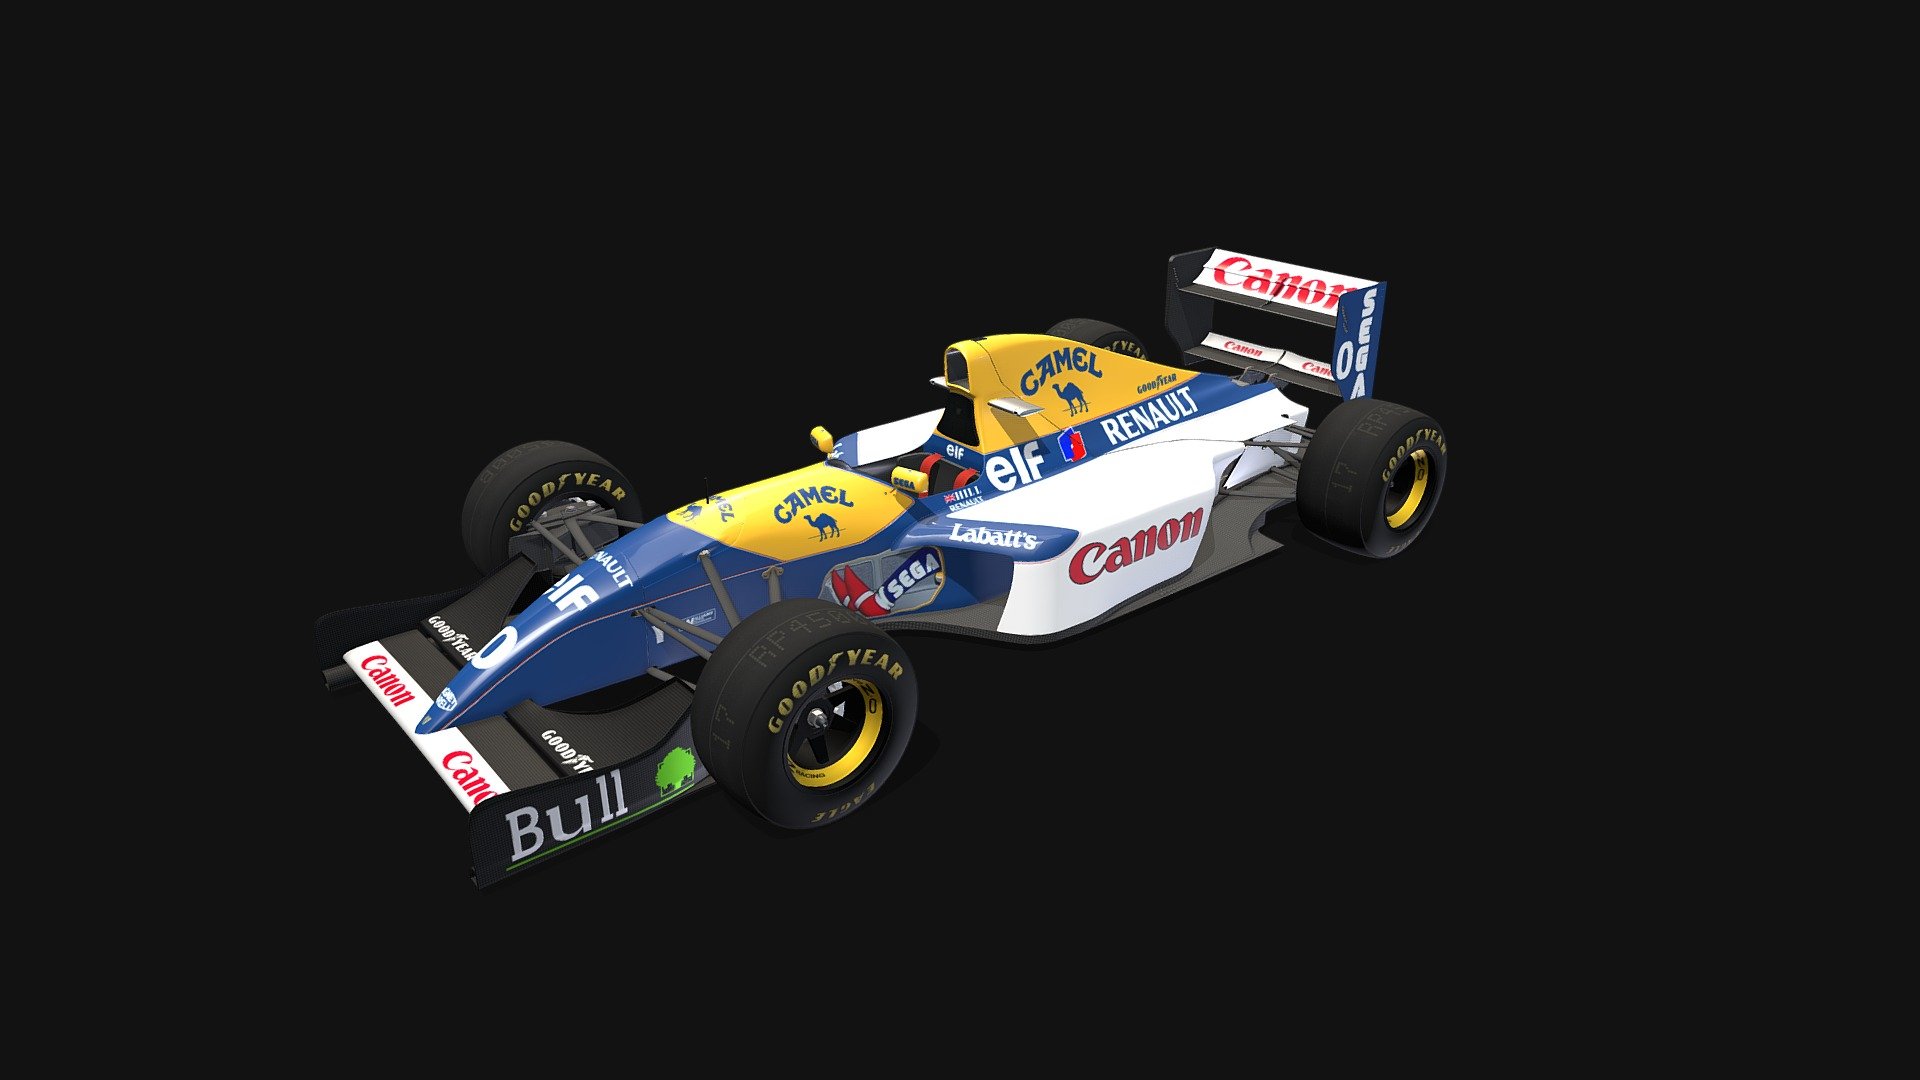 3D model of Damon Hill's 1993 Williams Renault FW15C Race car - Damon Hill Williams FW15C - 3D model by Paul Flower (@ouroboros888) 3d model